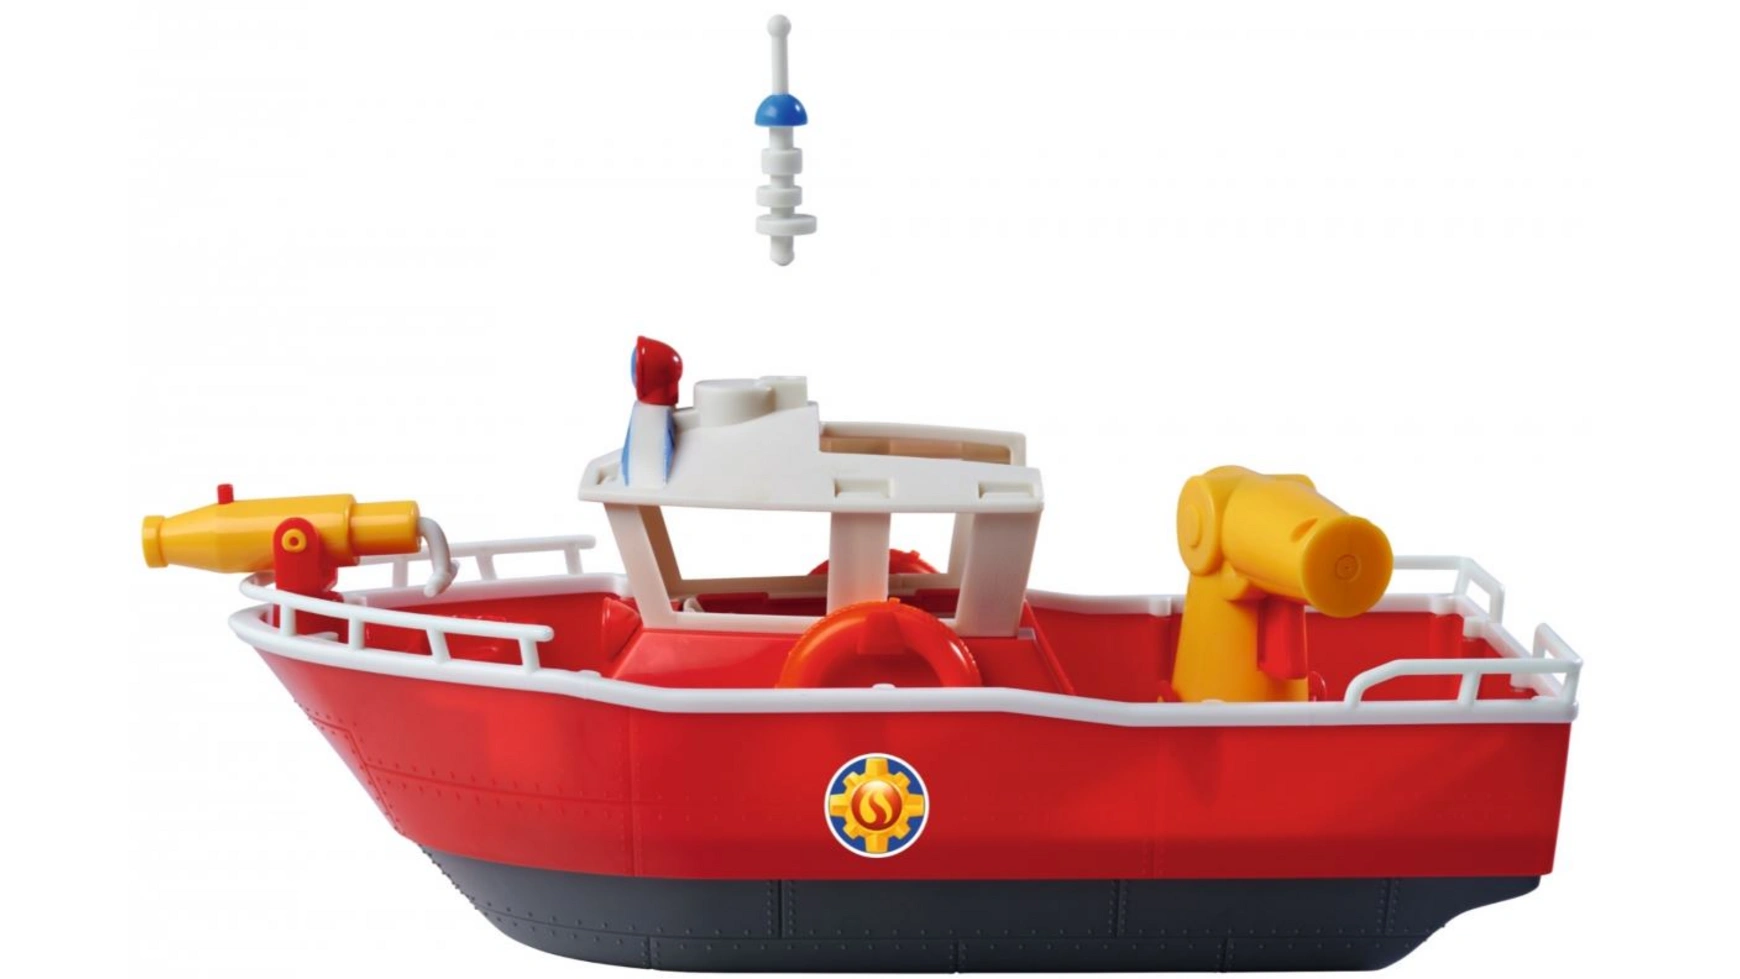 Пожарный сэм пожарная лодка сэма титана Simba пожарный автомобиль zhorya 71017 24 см красный